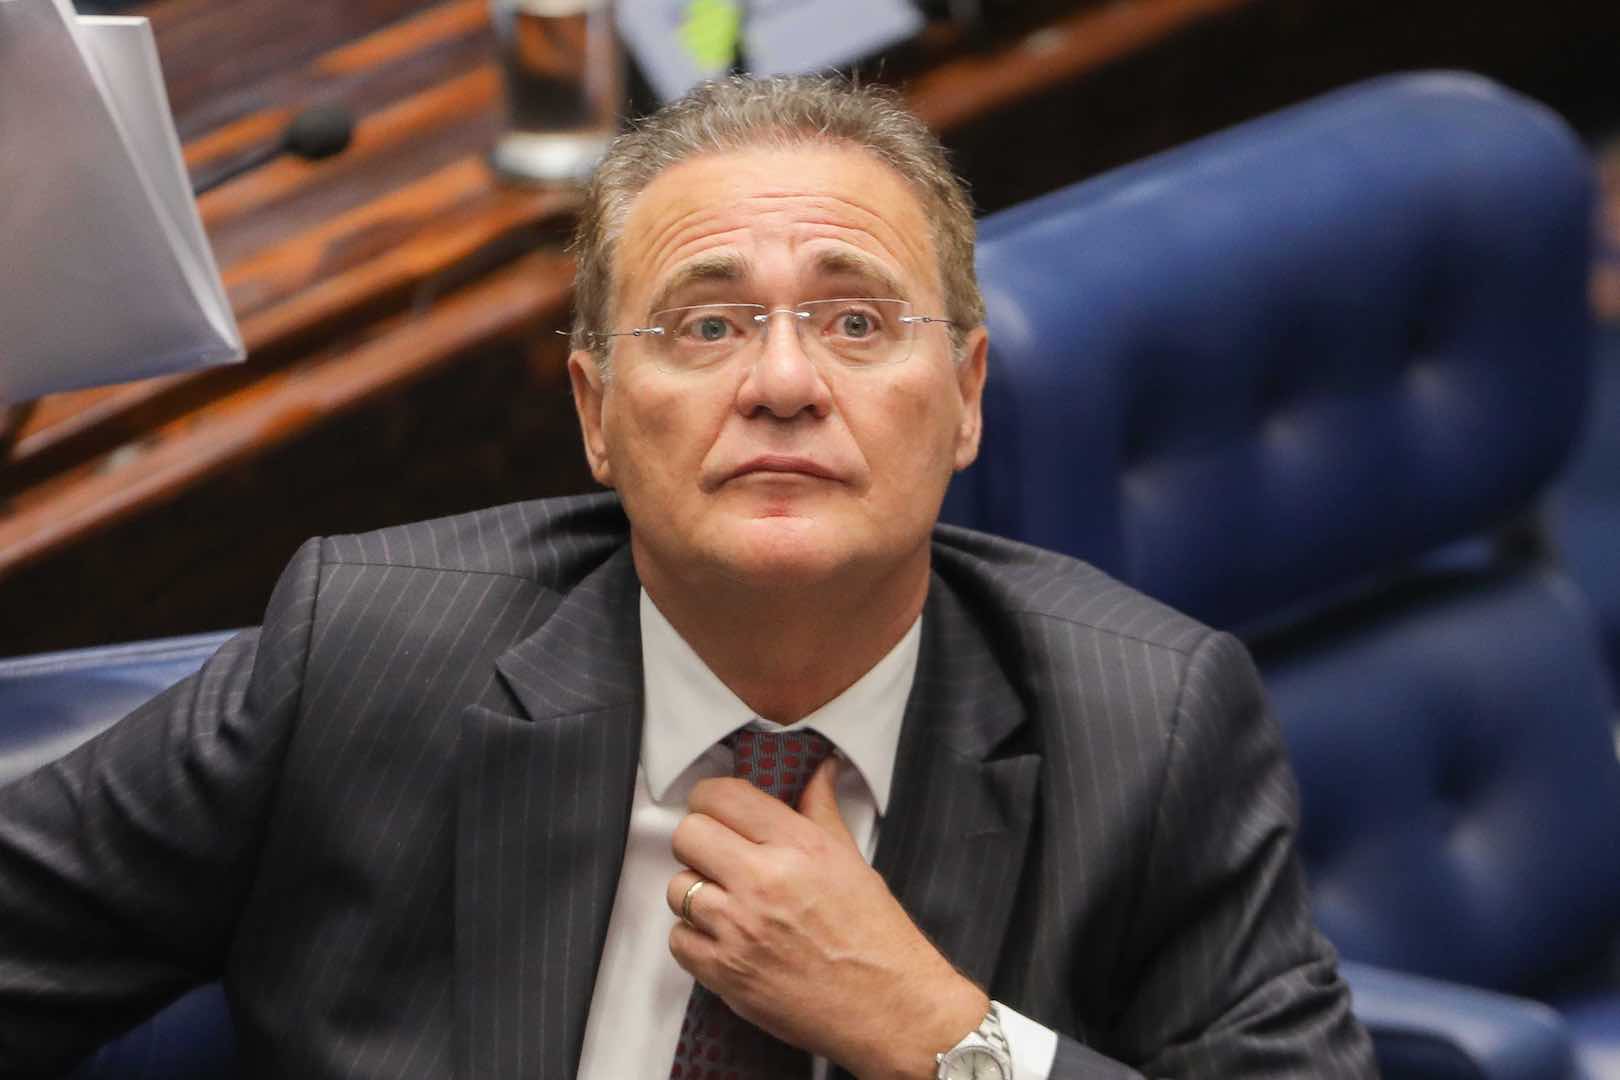 Voto de Flávio Bolsonaro em Alcolumbre fez Renan Calheiros jogar a toalha   